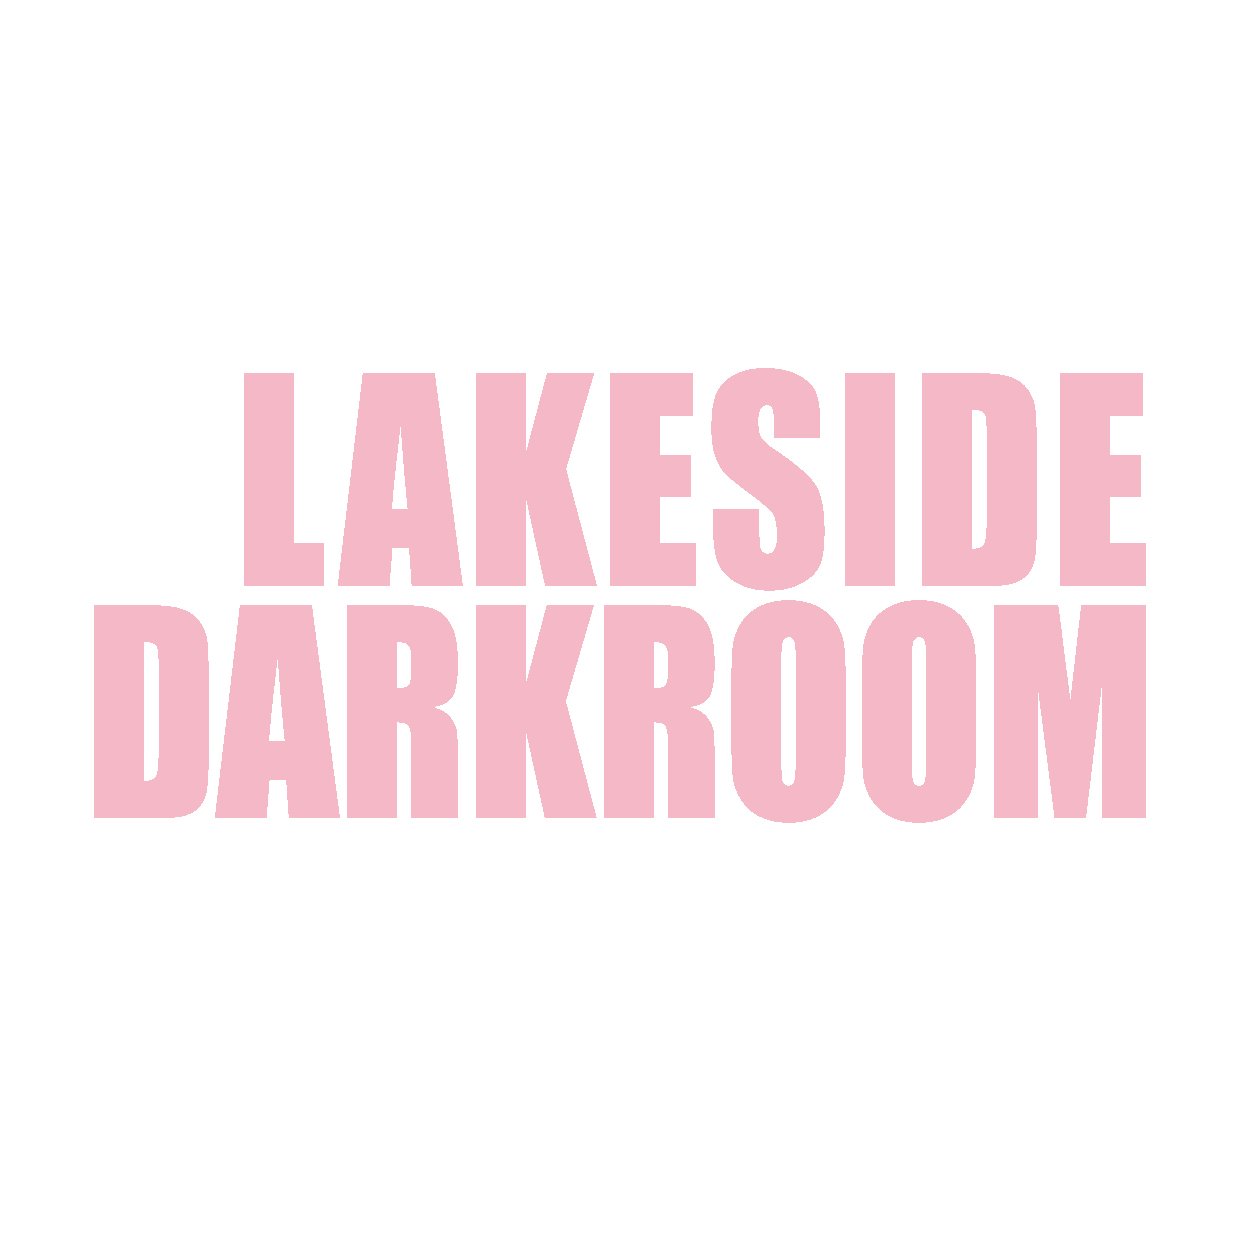 Lakeside Darkroom